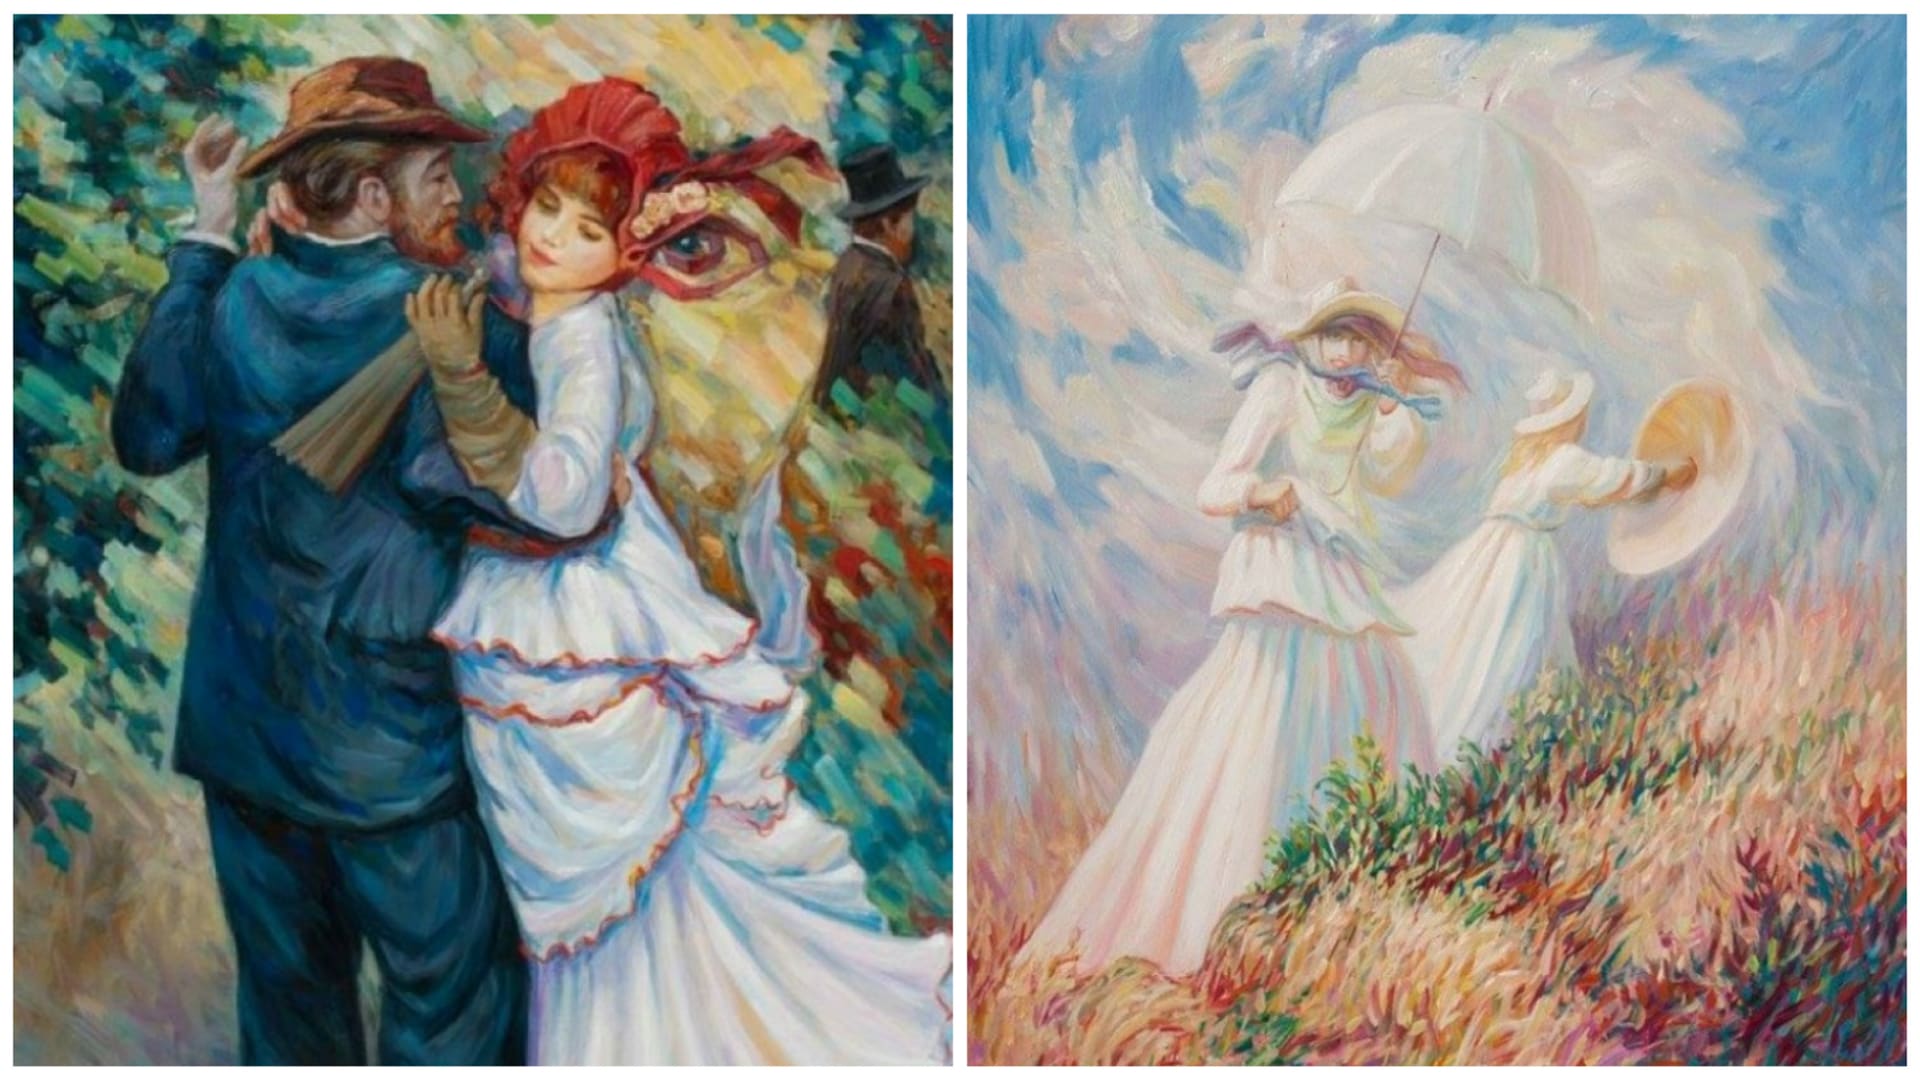 Zkušené oko okamžitě vidí Renoira a Moneta